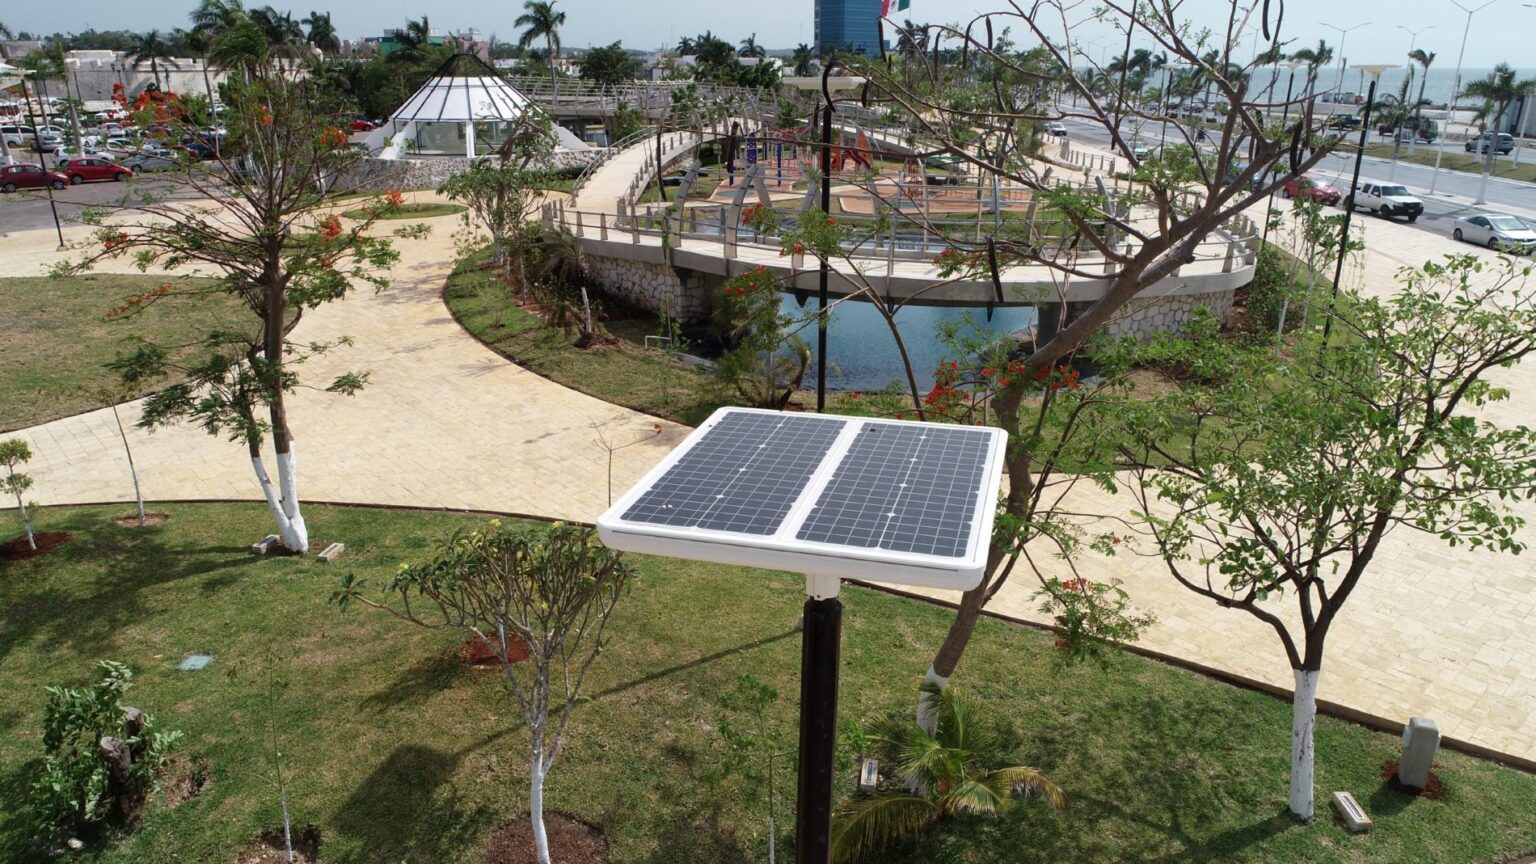 Eclairage solaire parc Moch Couoh, Campeche, Mexique